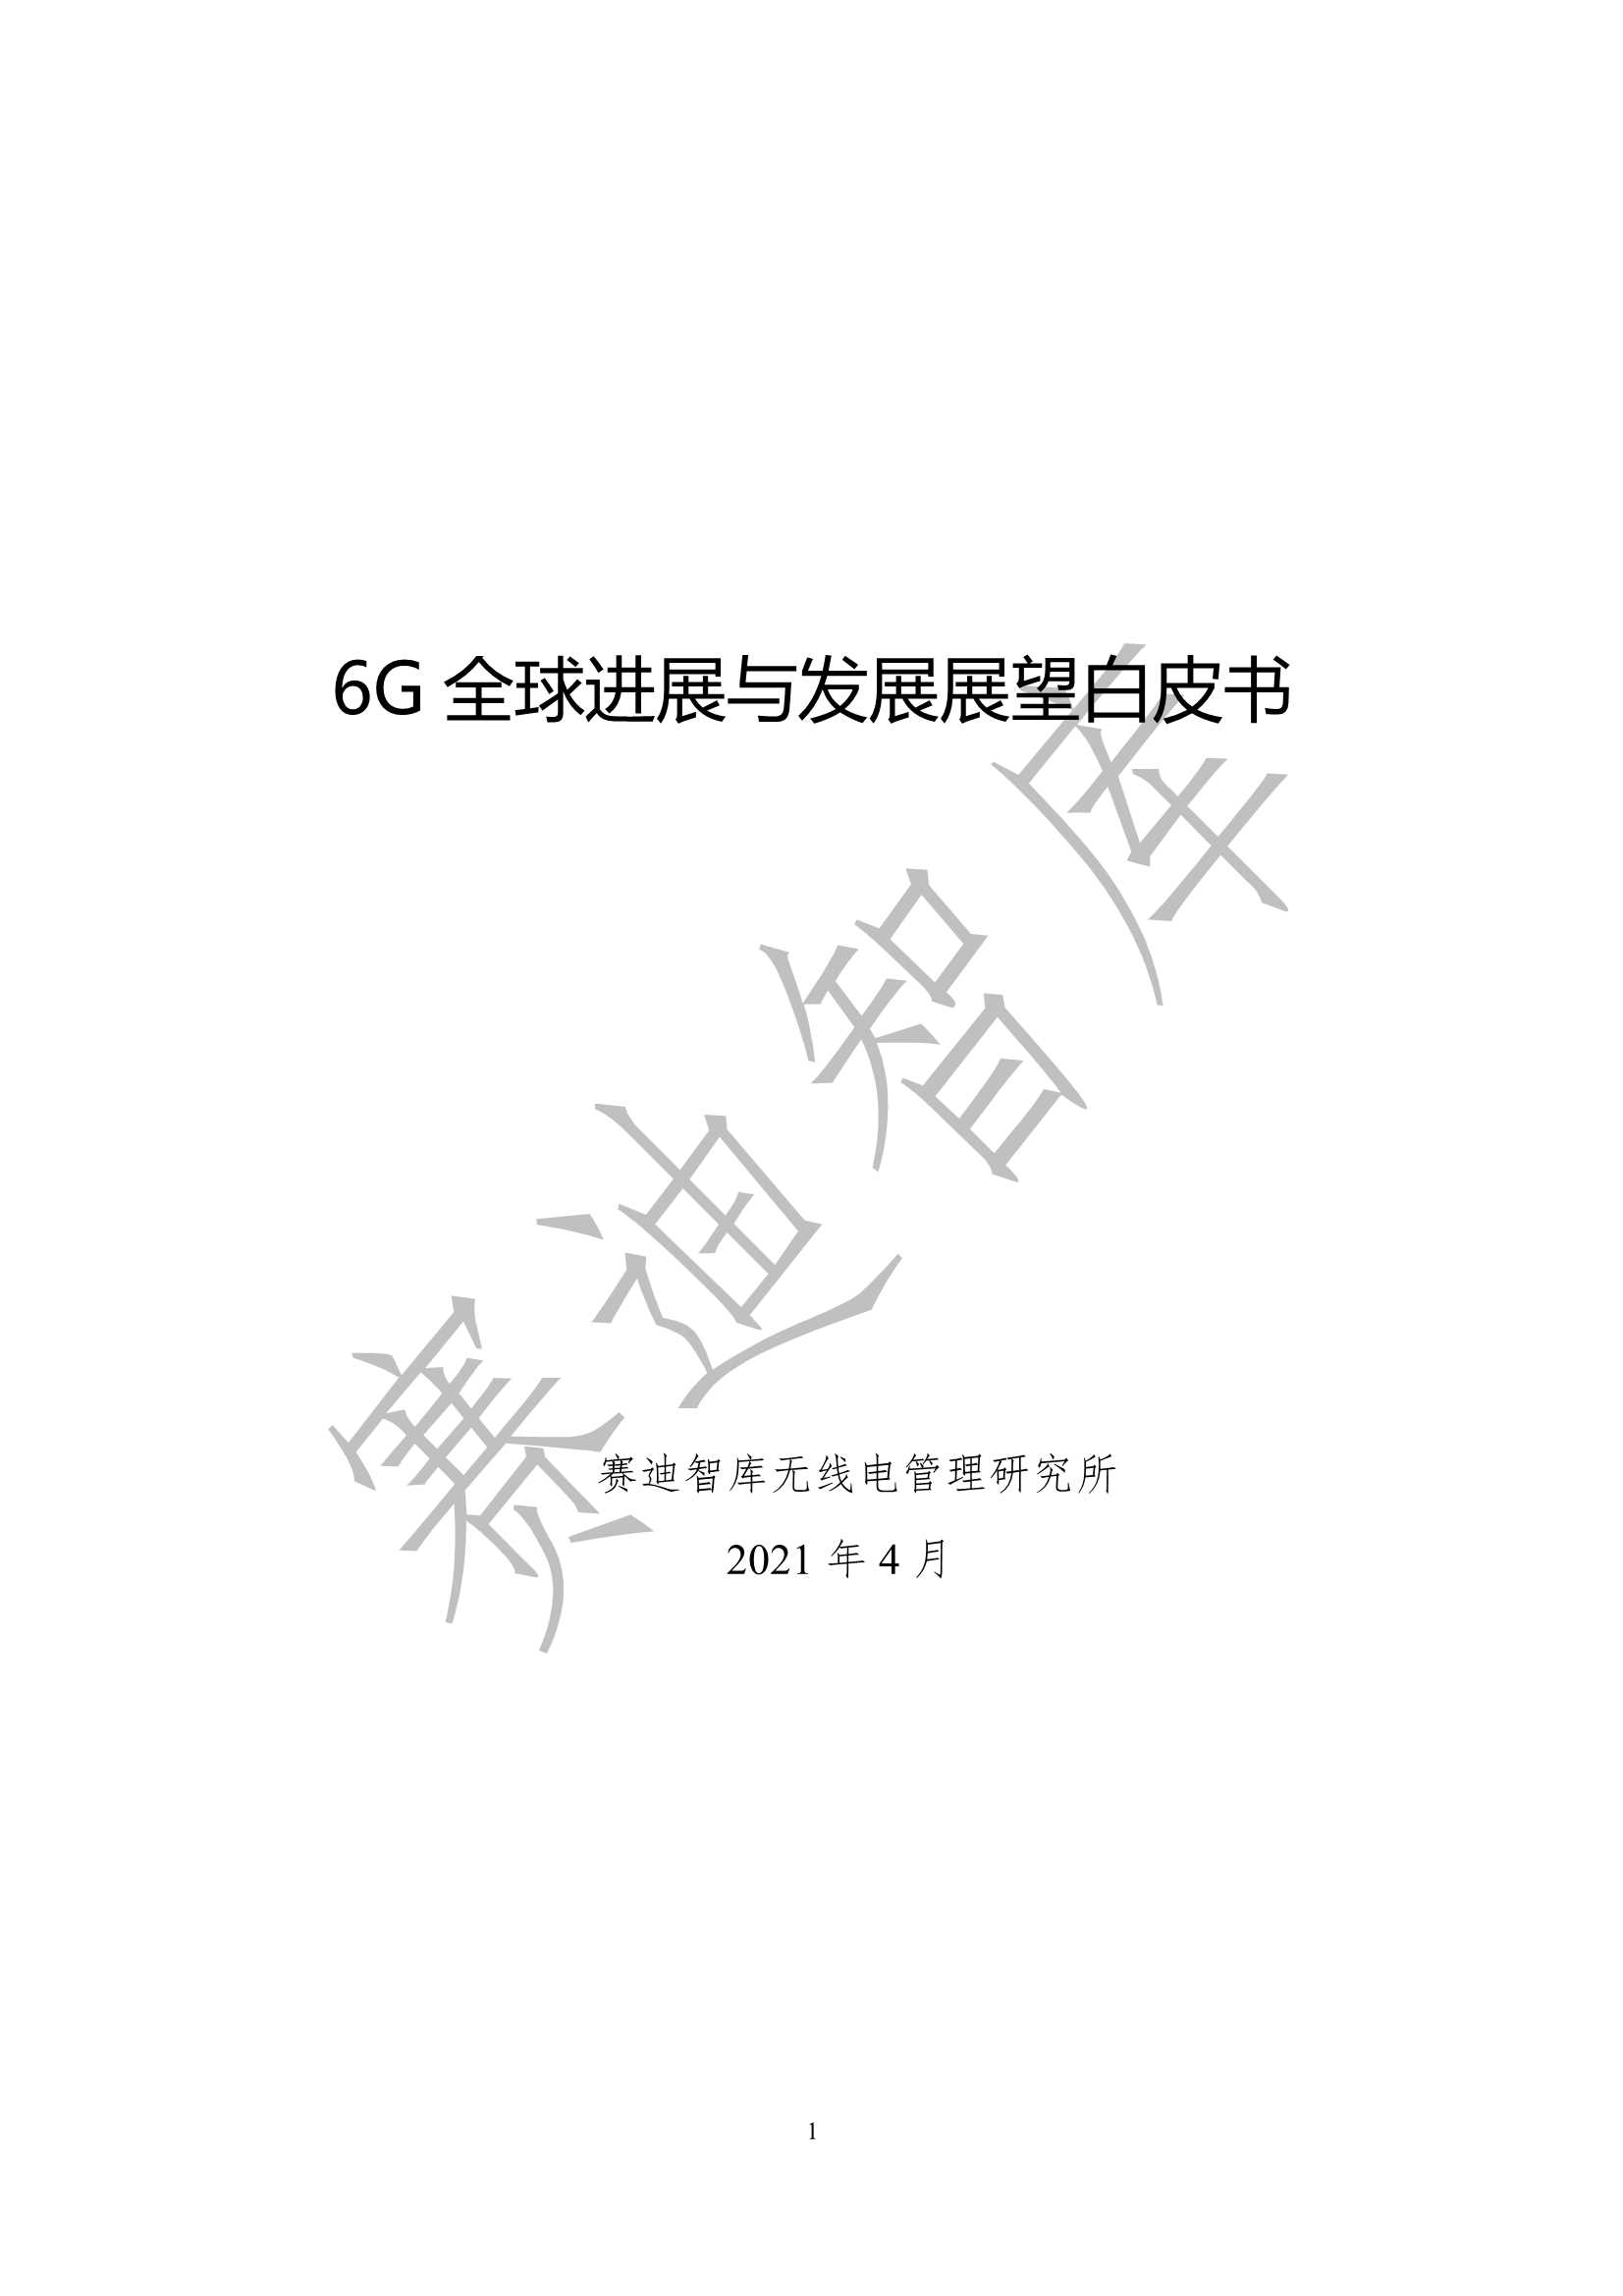 赛迪-6G全球进展与发展展望白皮书-2021.05-35页